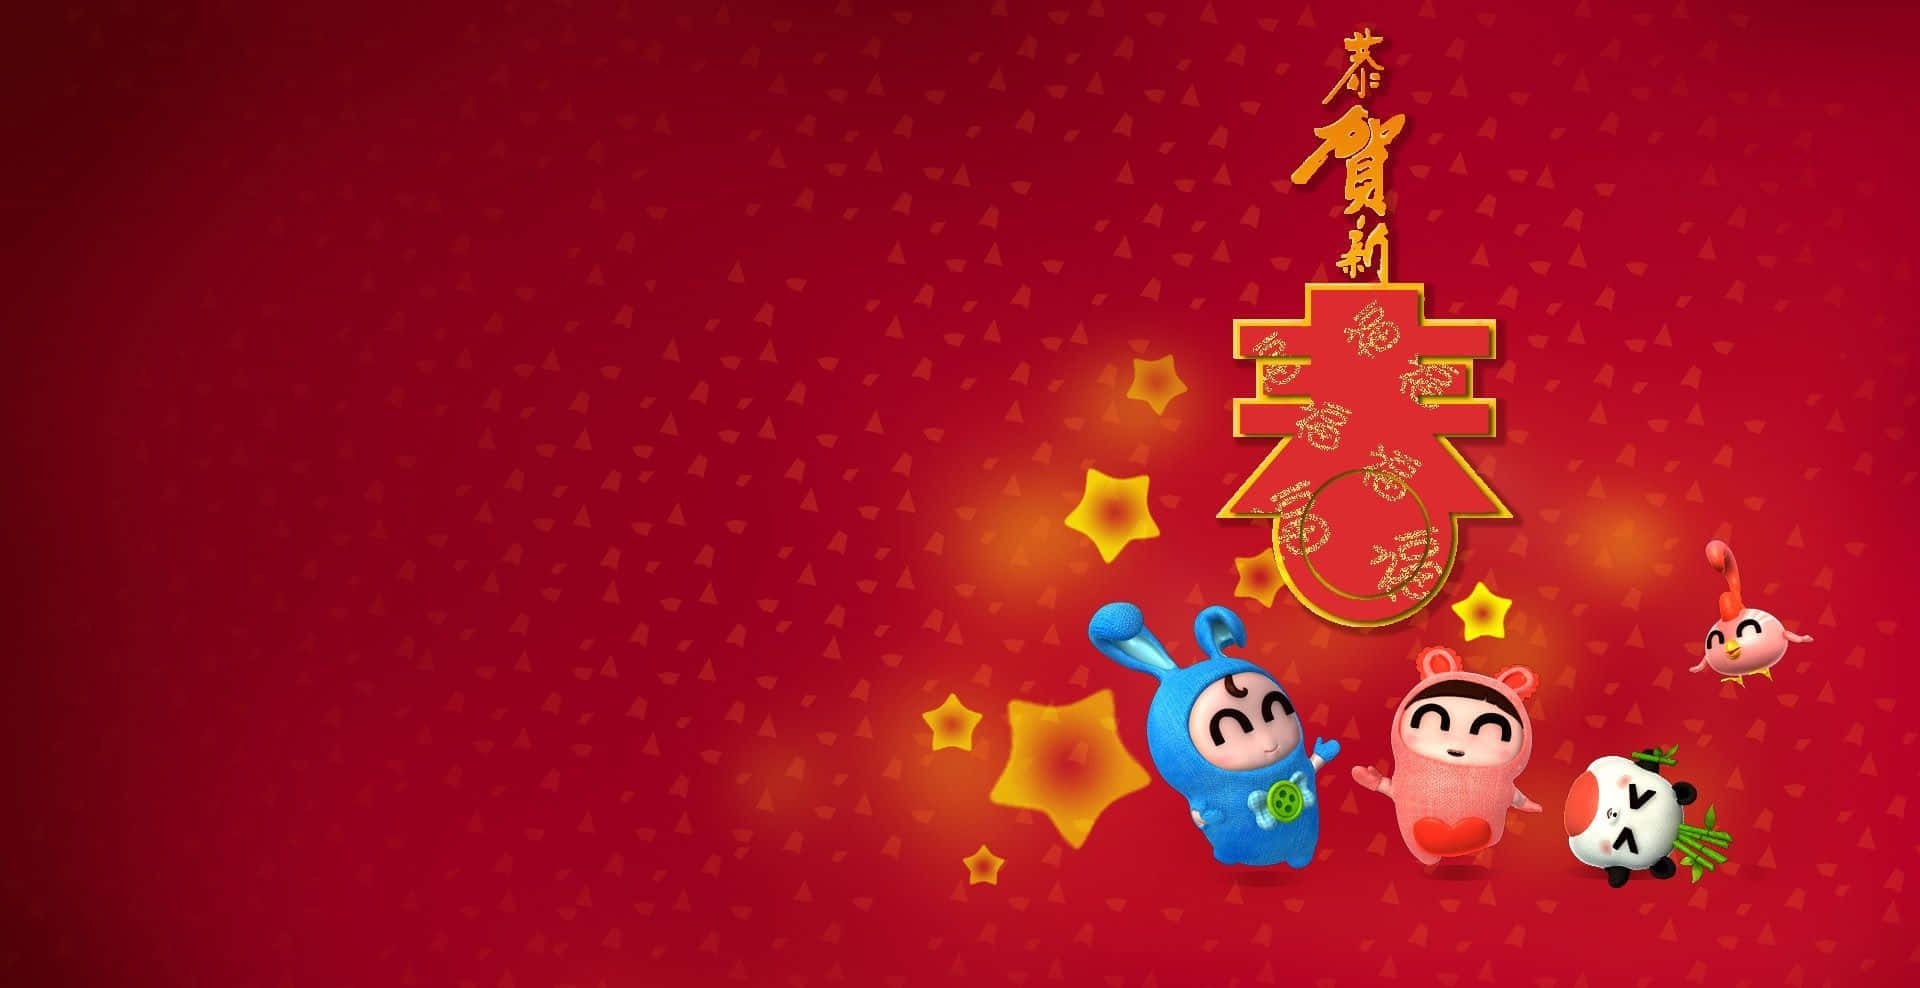 Celebral'inizio Di Un Nuovo Anno Con Il Capodanno Cinese.